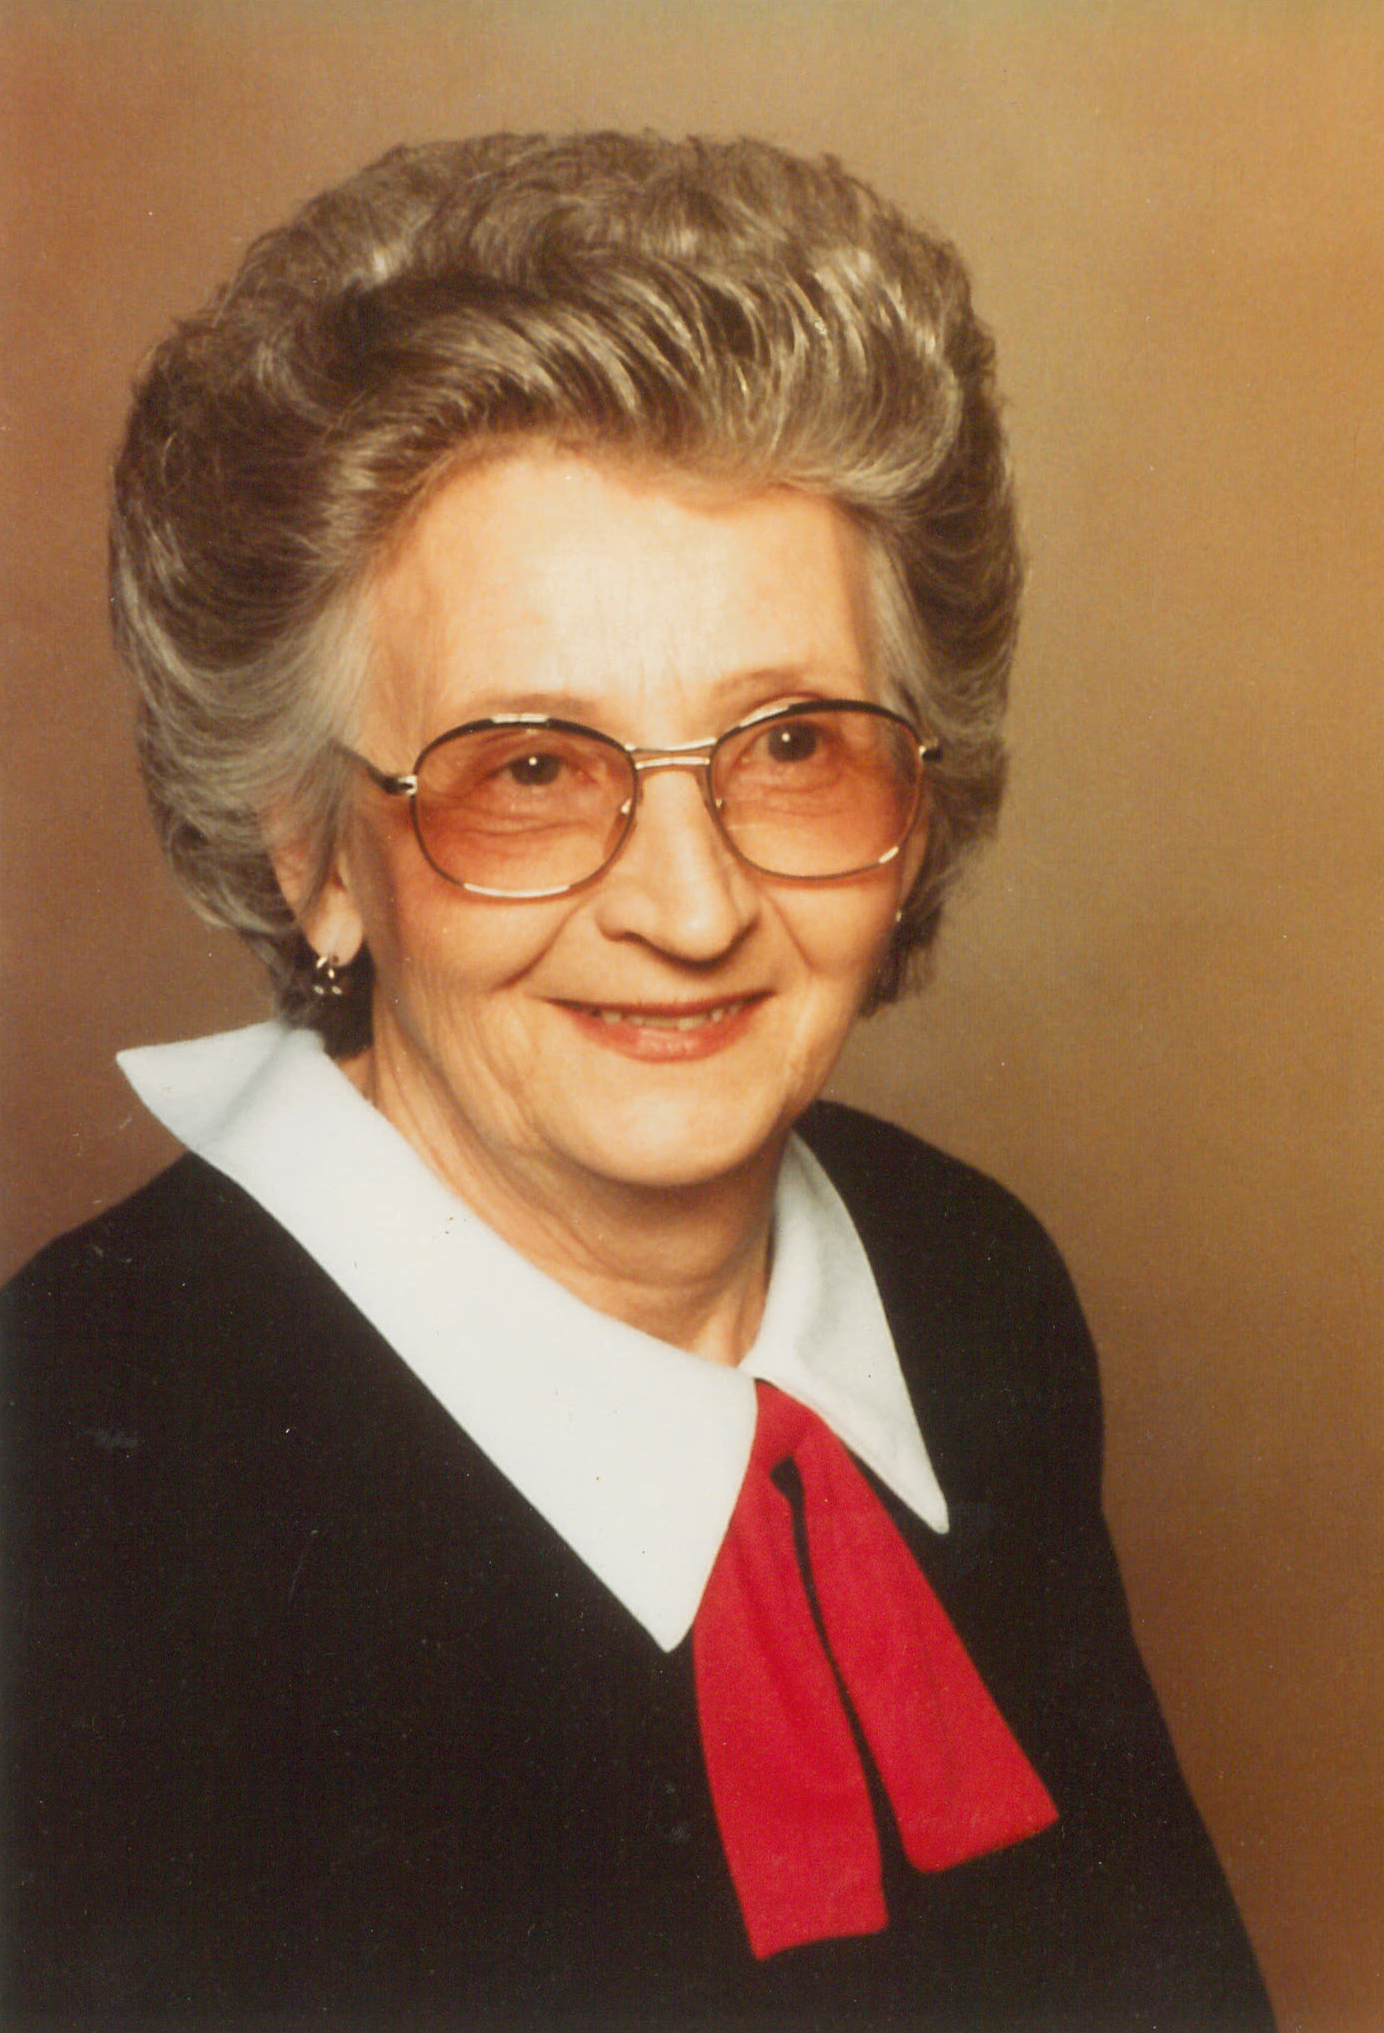 Obituary information for Mary Jo Powell